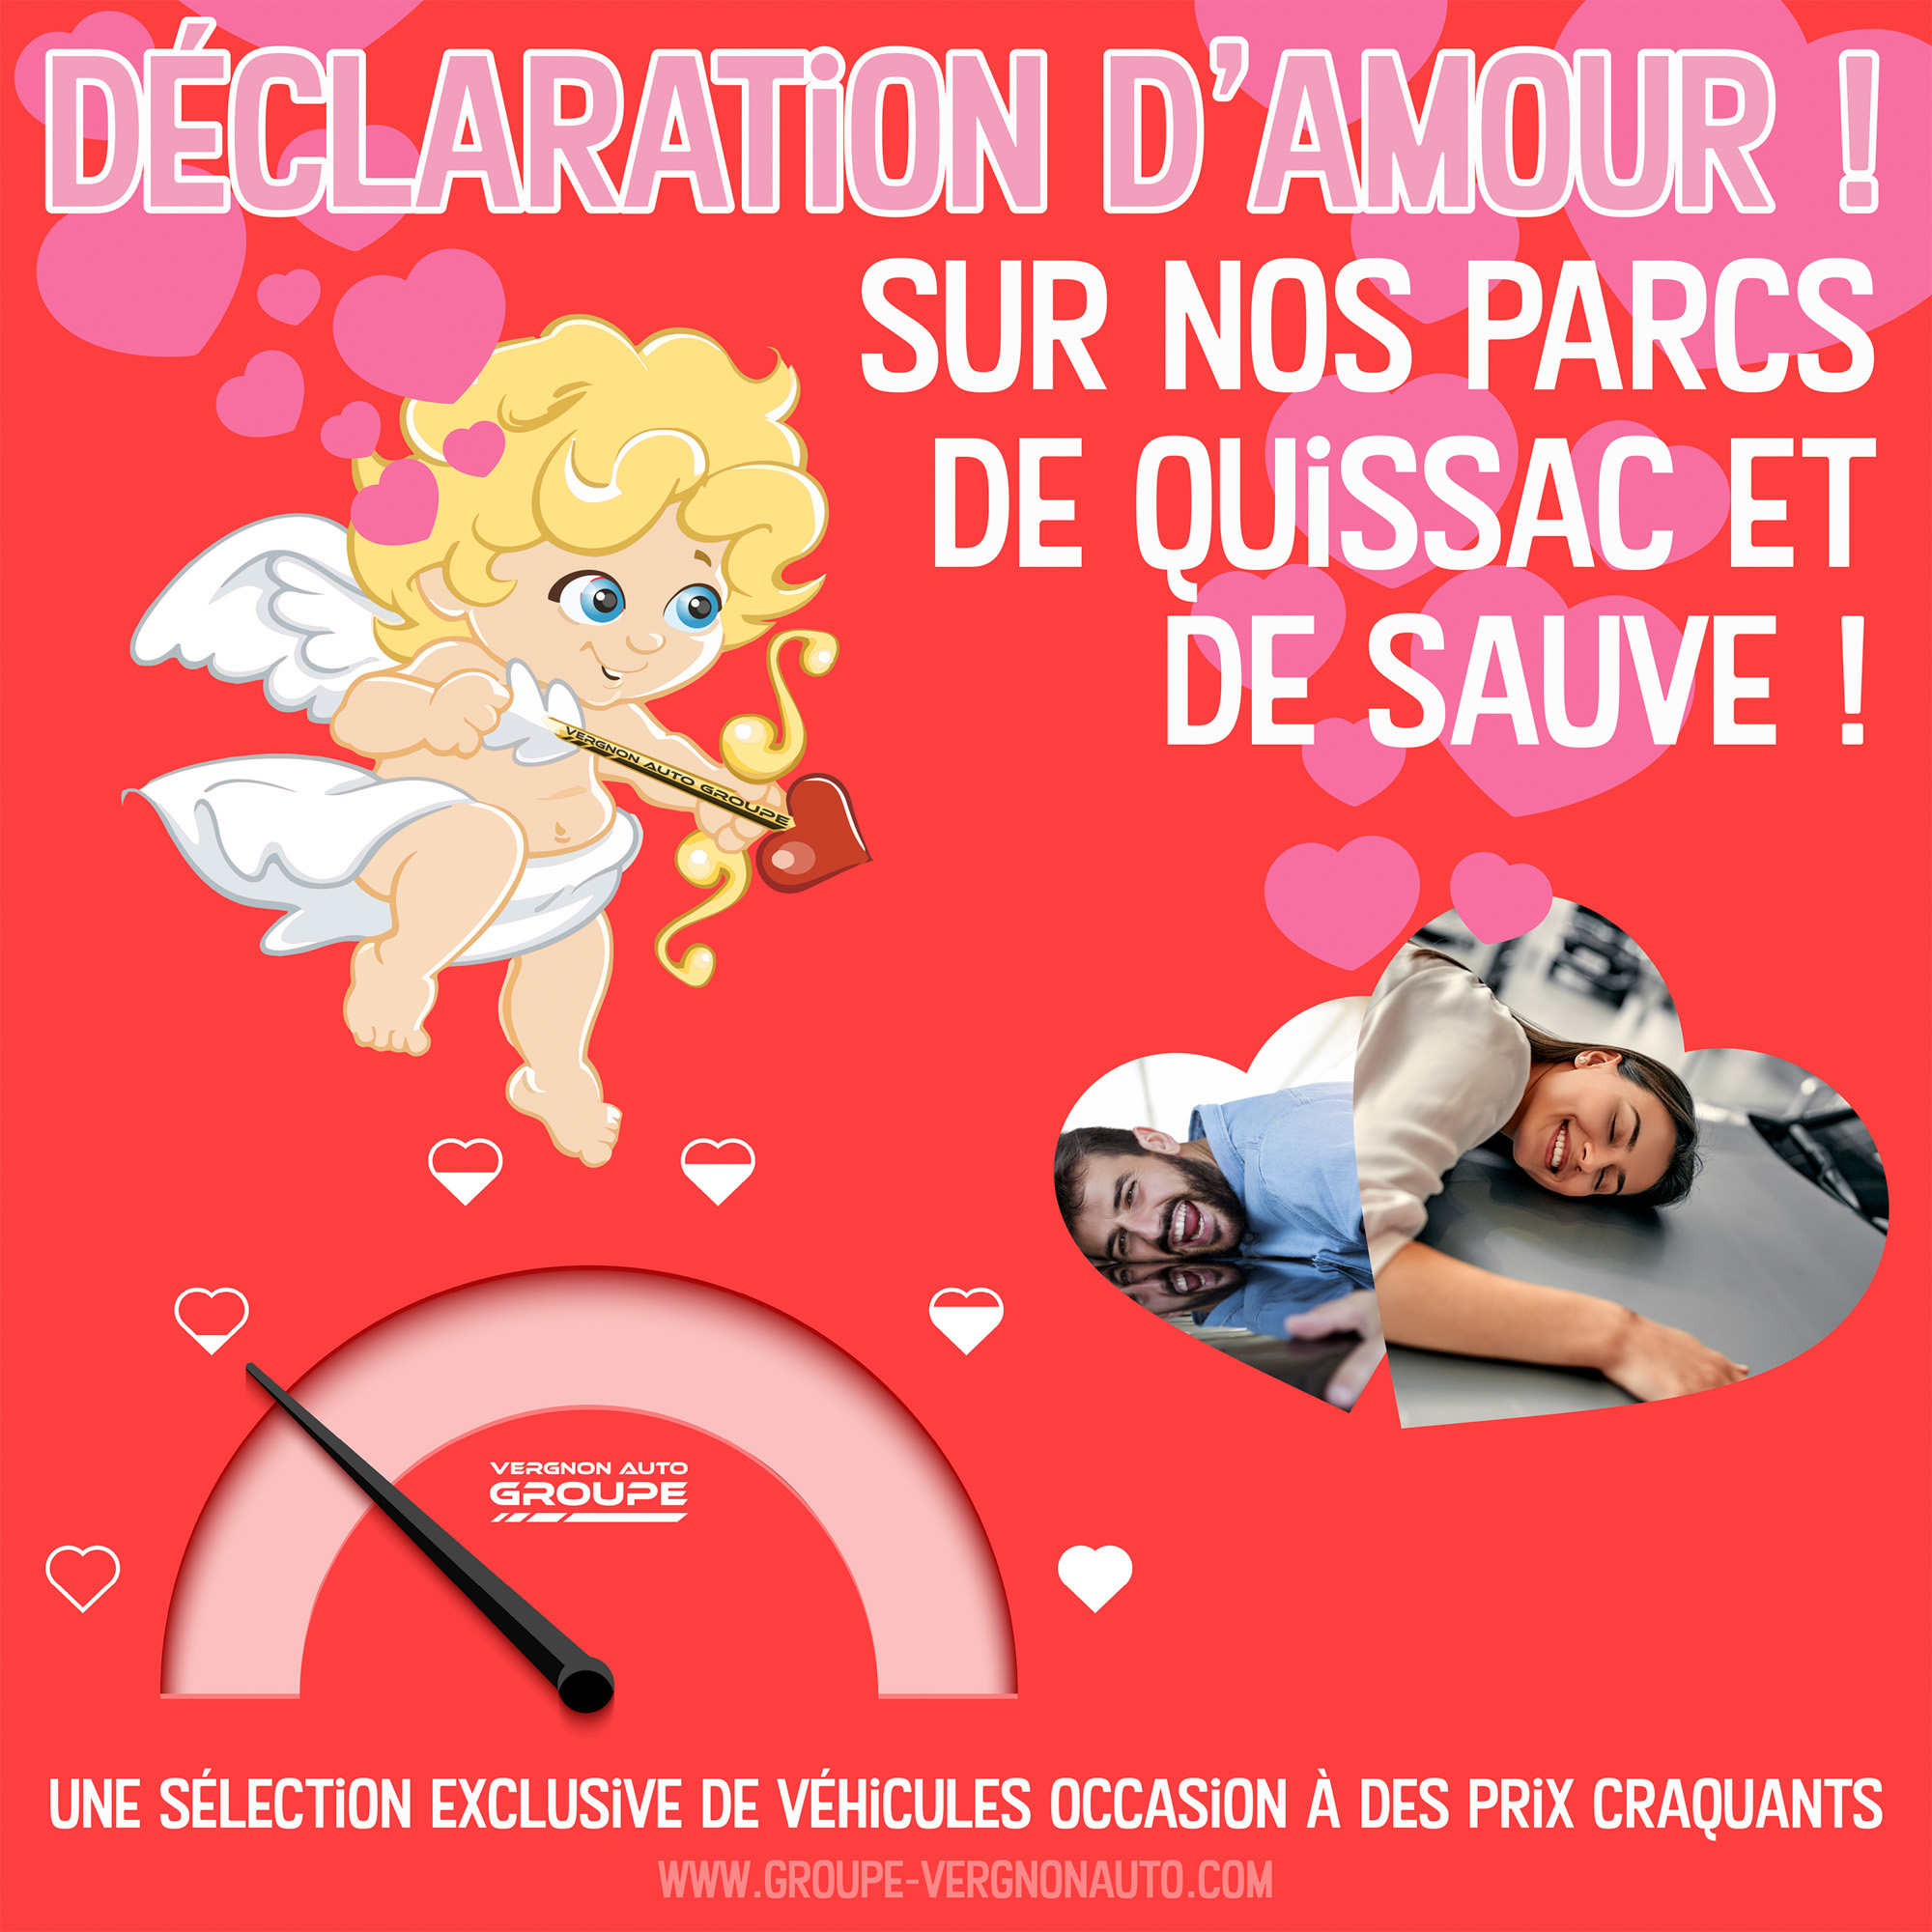 Promos Saint-Valentin, dans le Gard, des voitures d'occasion au meilleur prix et sans aucune concession